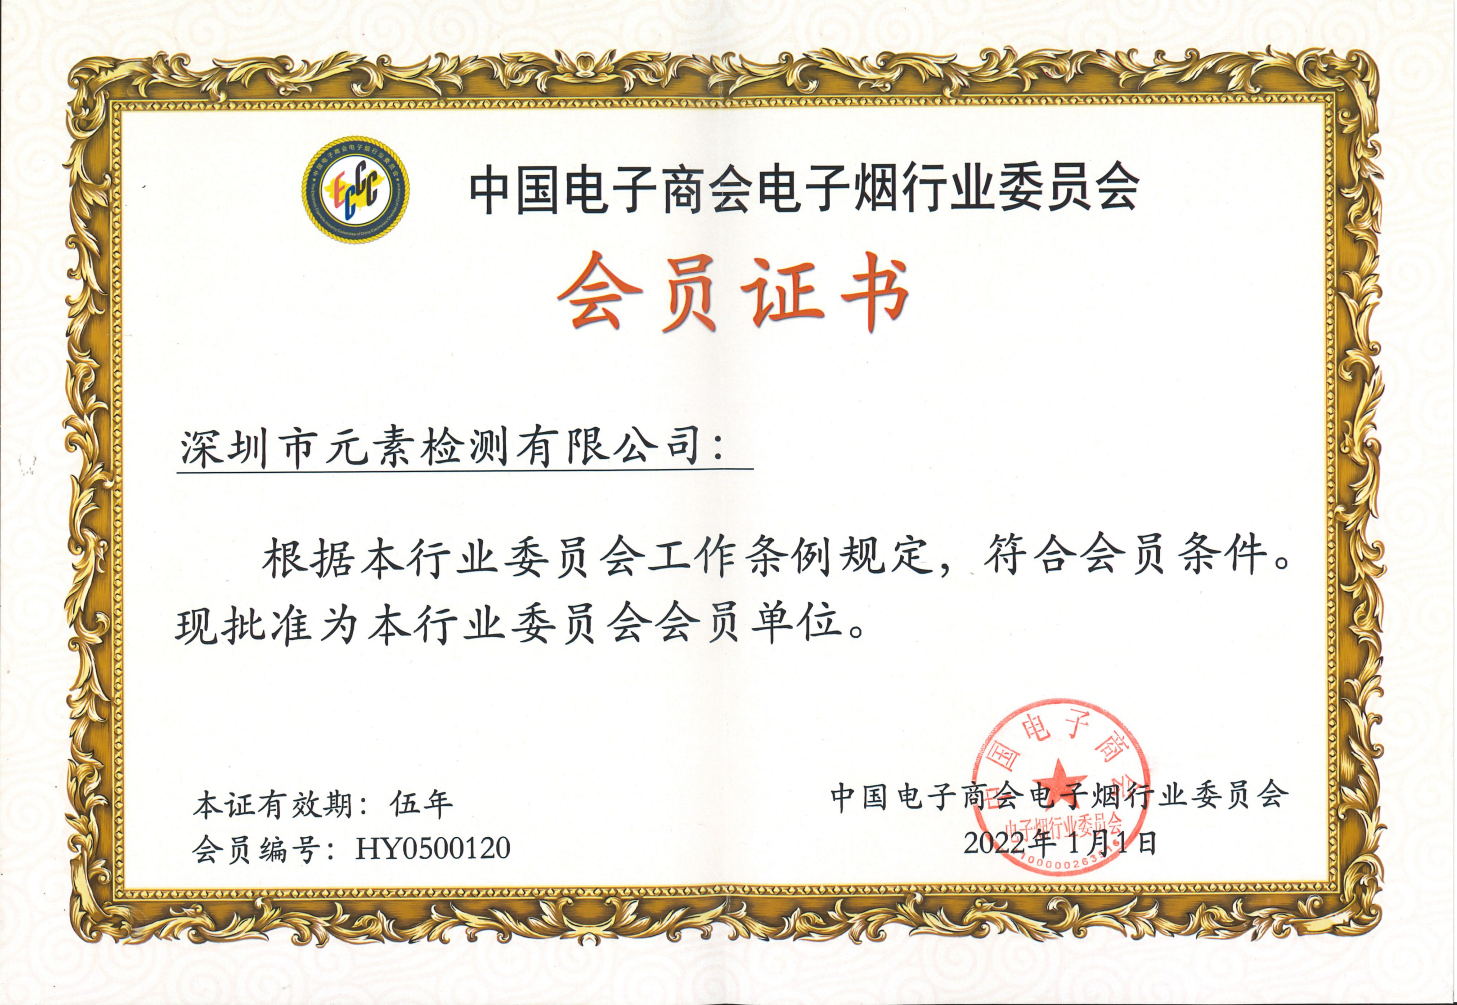 中国电子烟协会会员证